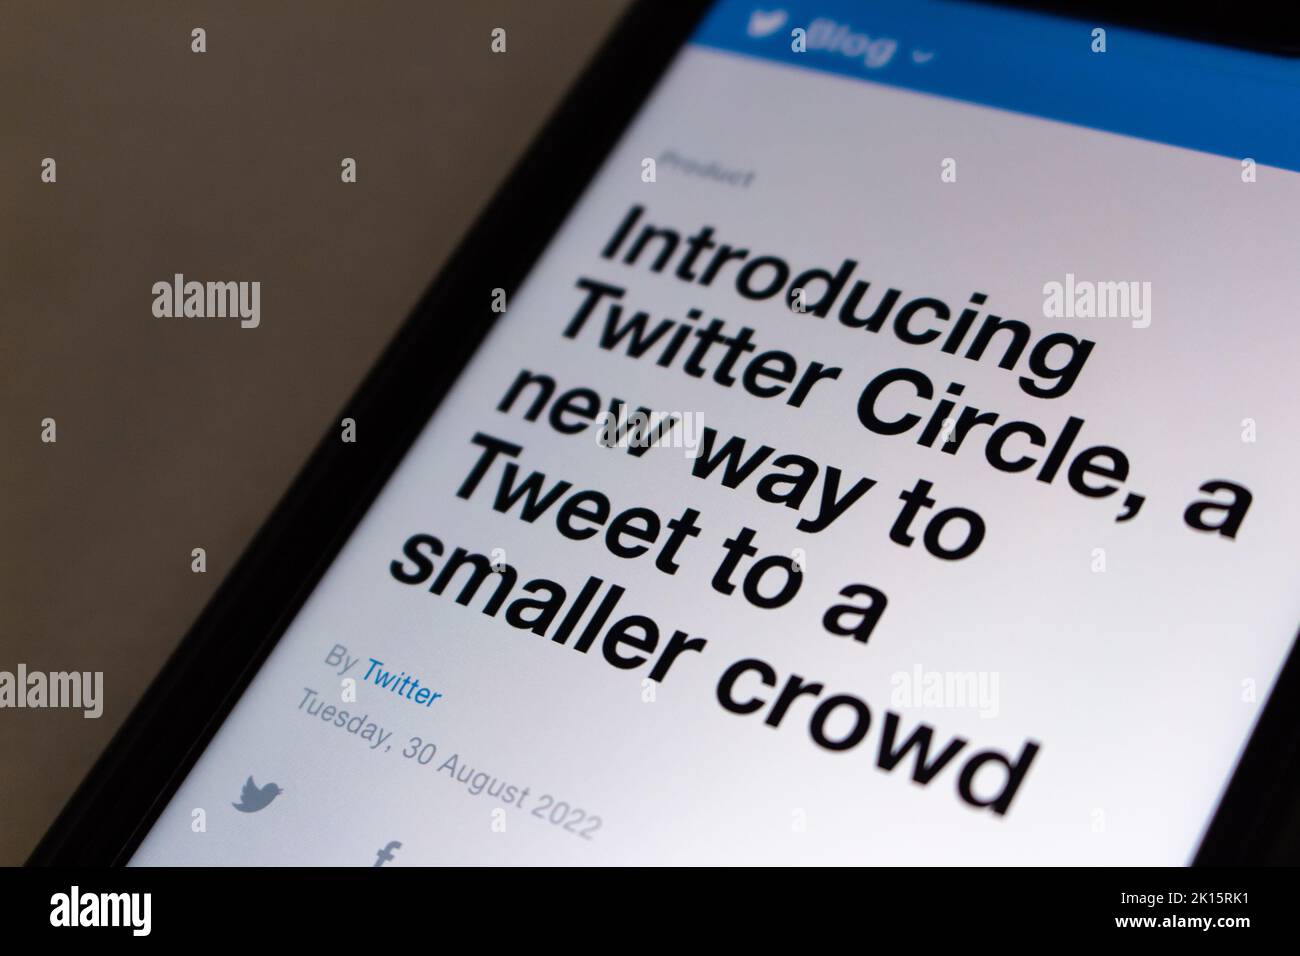 Ein Blog-Post über Twitter Circle aus Twitter offiziellen Blog. Twitter Circle ist eine Möglichkeit, Tweets an ausgewählte Personen oder eine kleinere Menge zu senden Stockfoto